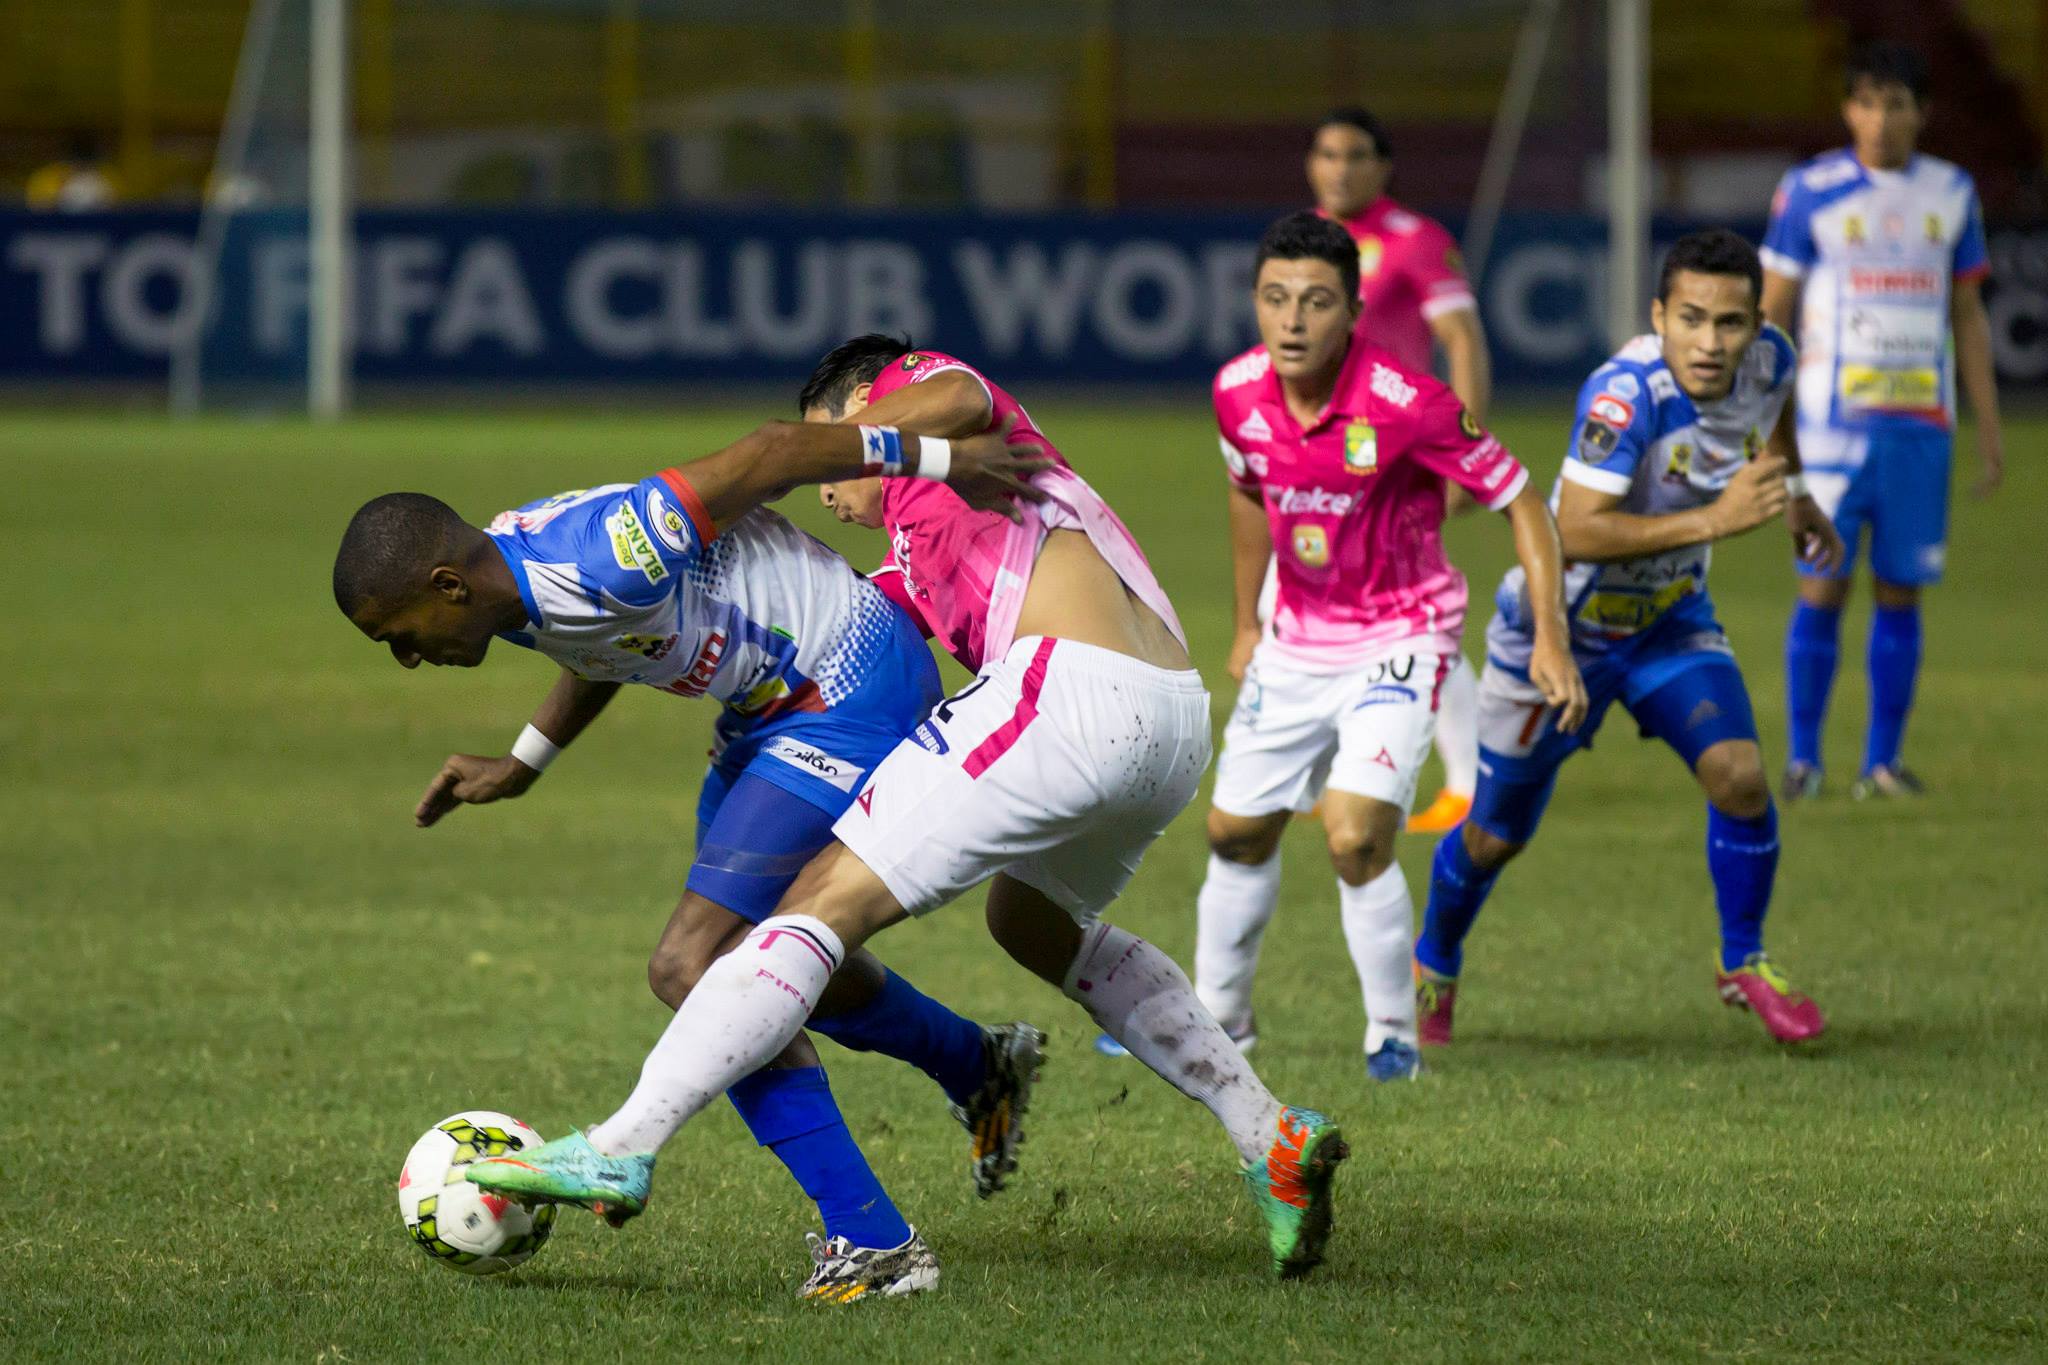 Presencia panameña y un empate beneficioso en la primera noche de la CONCACAF Champions League